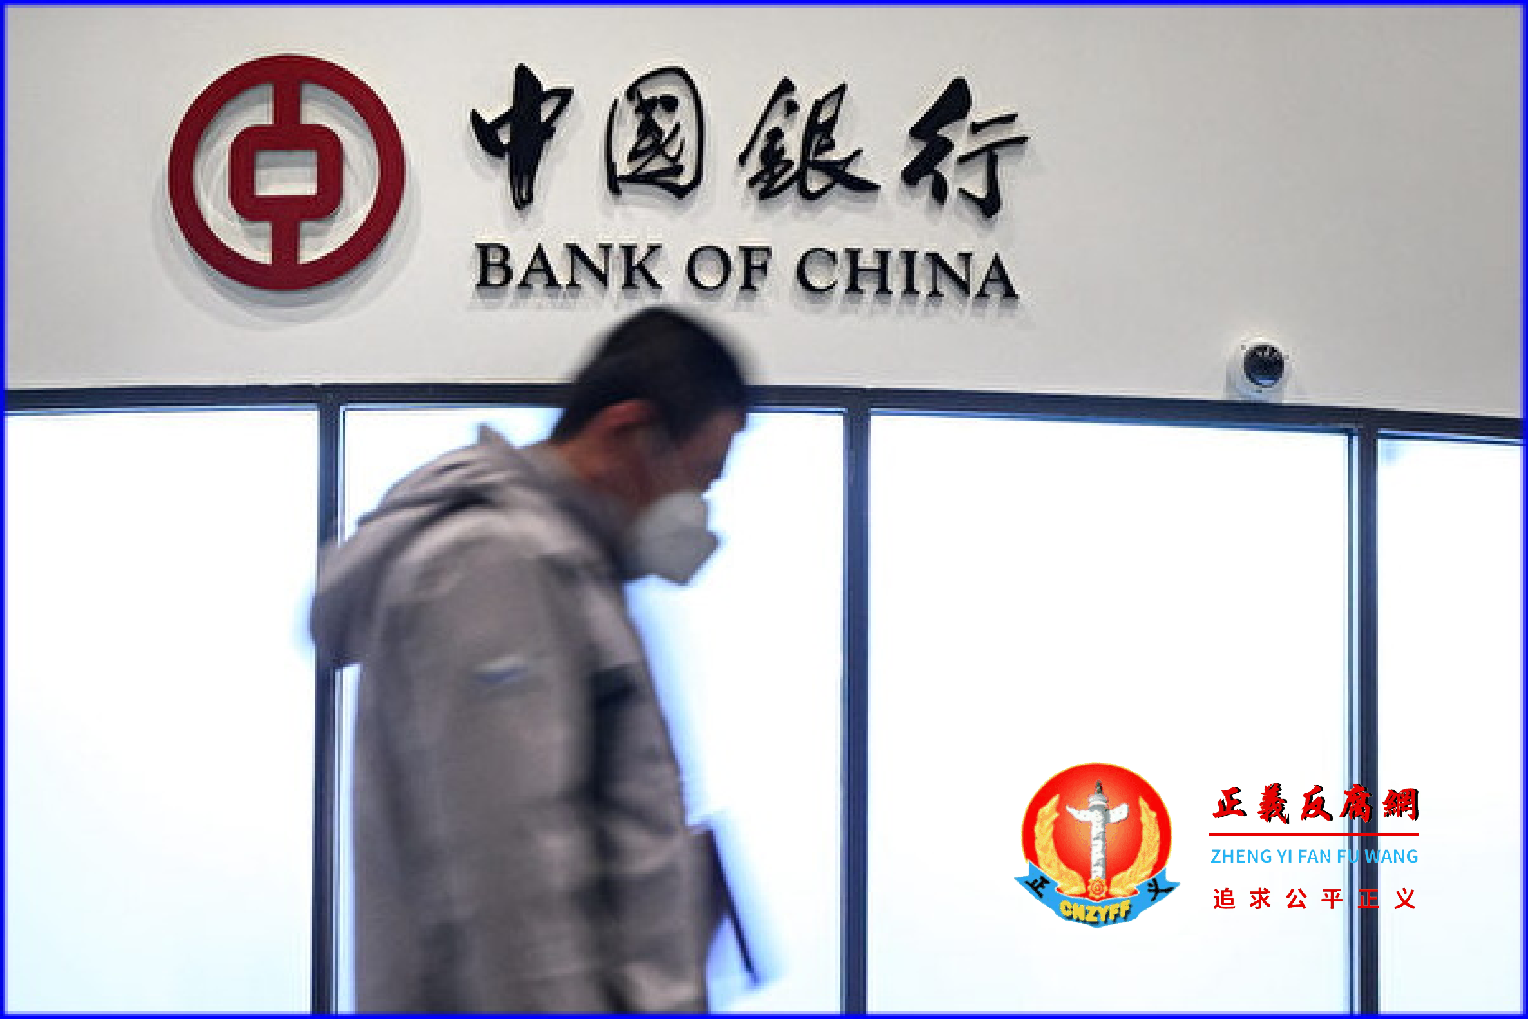 中国银行.png